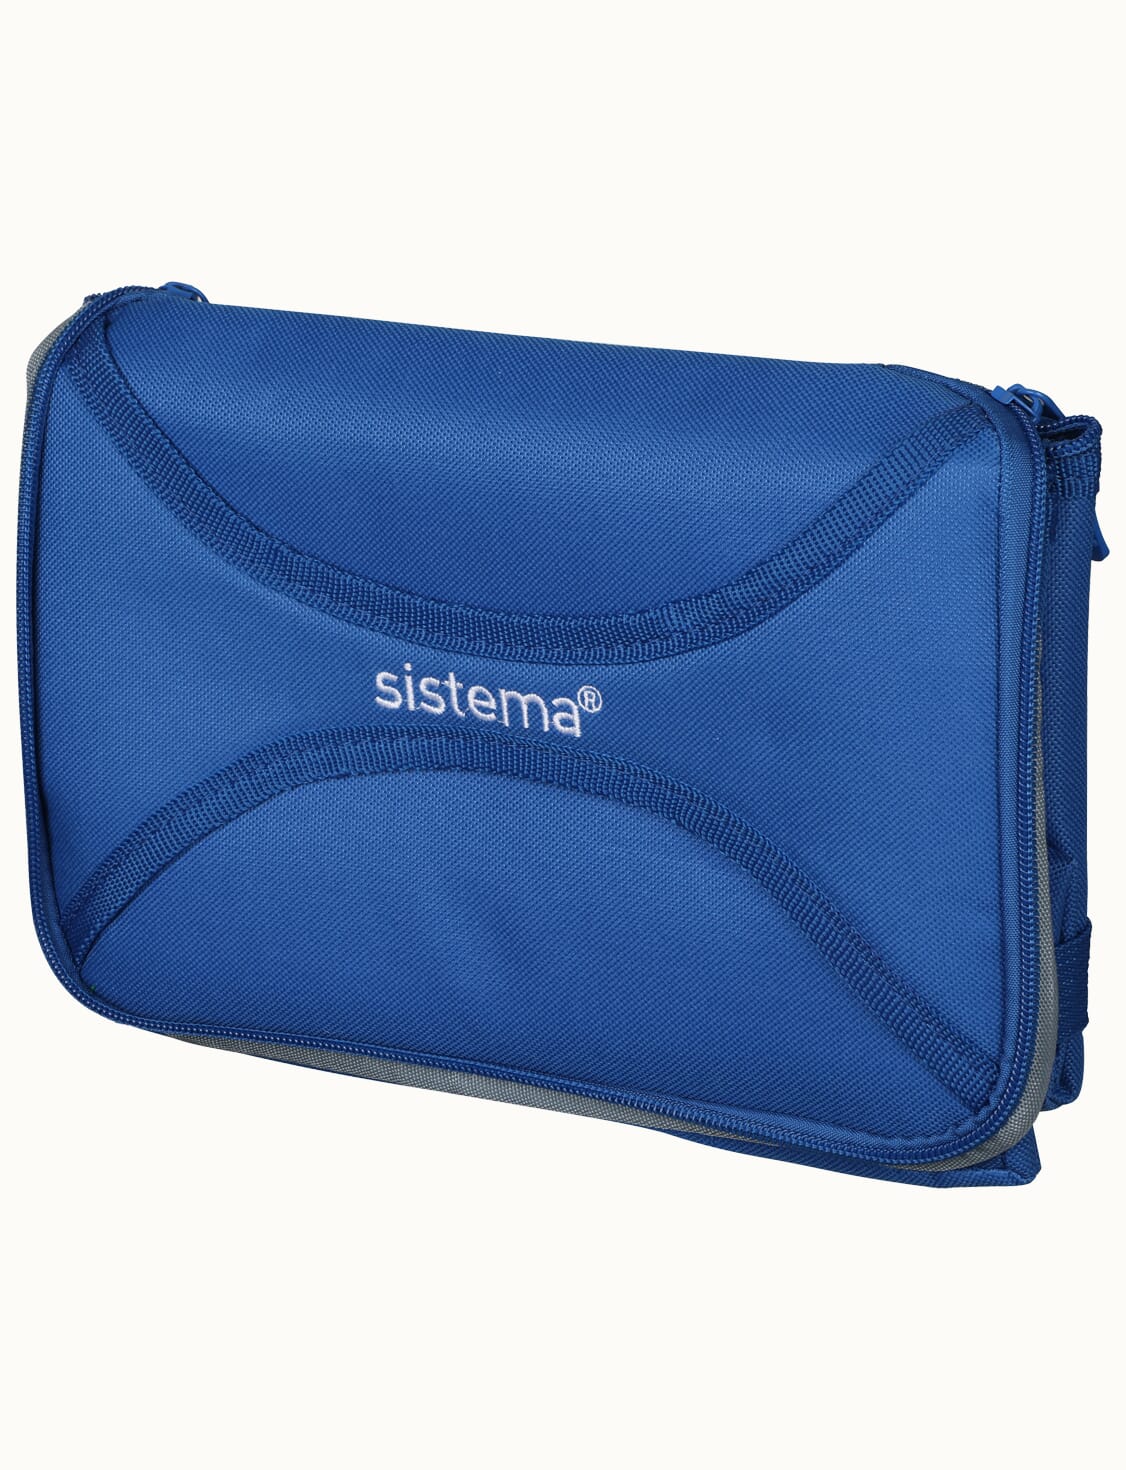 Mega Fold Up Cooler Bag TO GO™-Ocean Blue